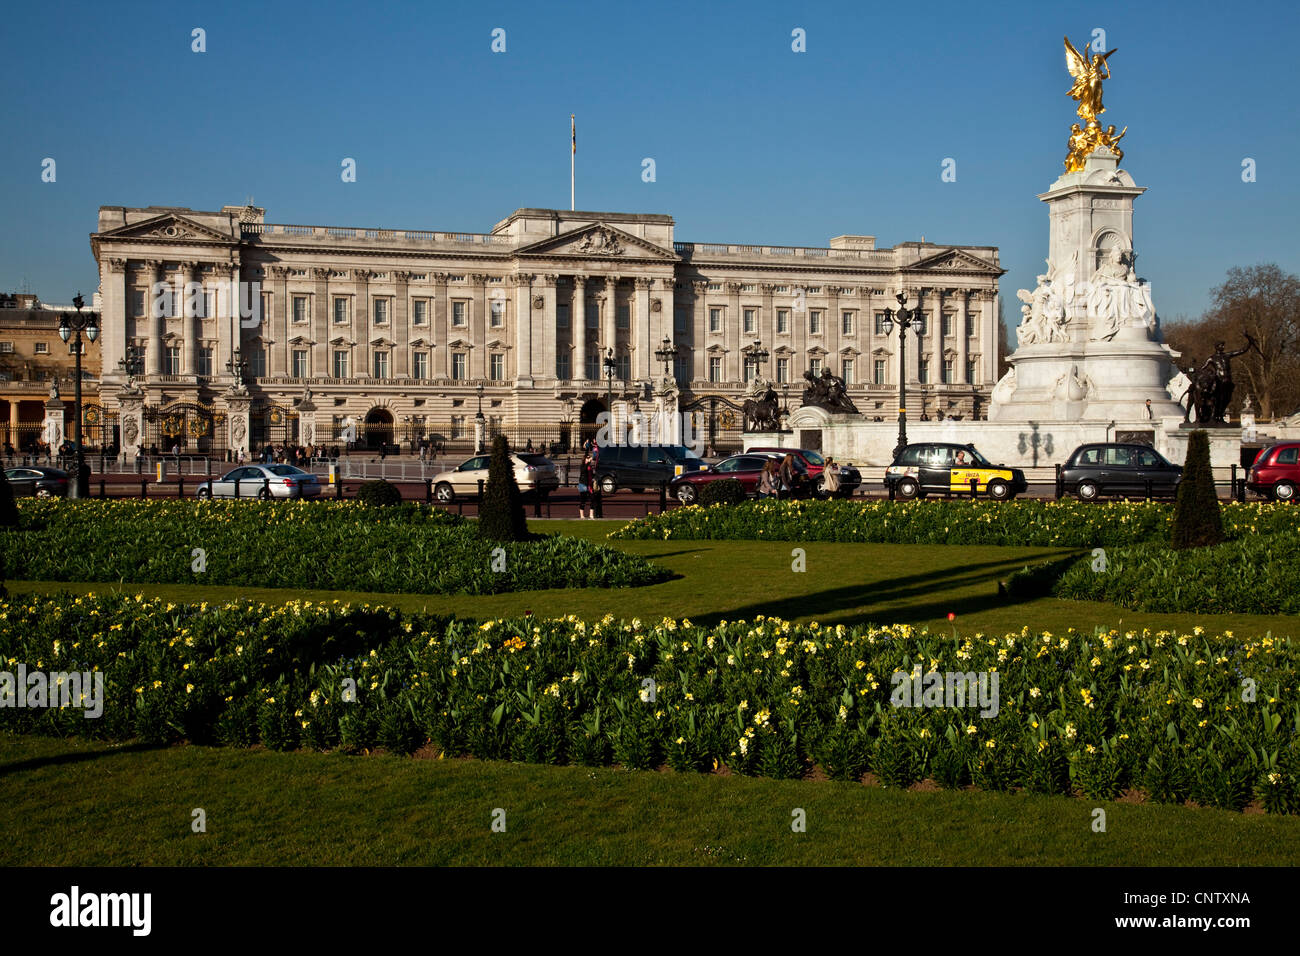 Le palais de Buckingham et de l'Édifice commémoratif Victoria, Londres, Angleterre Banque D'Images